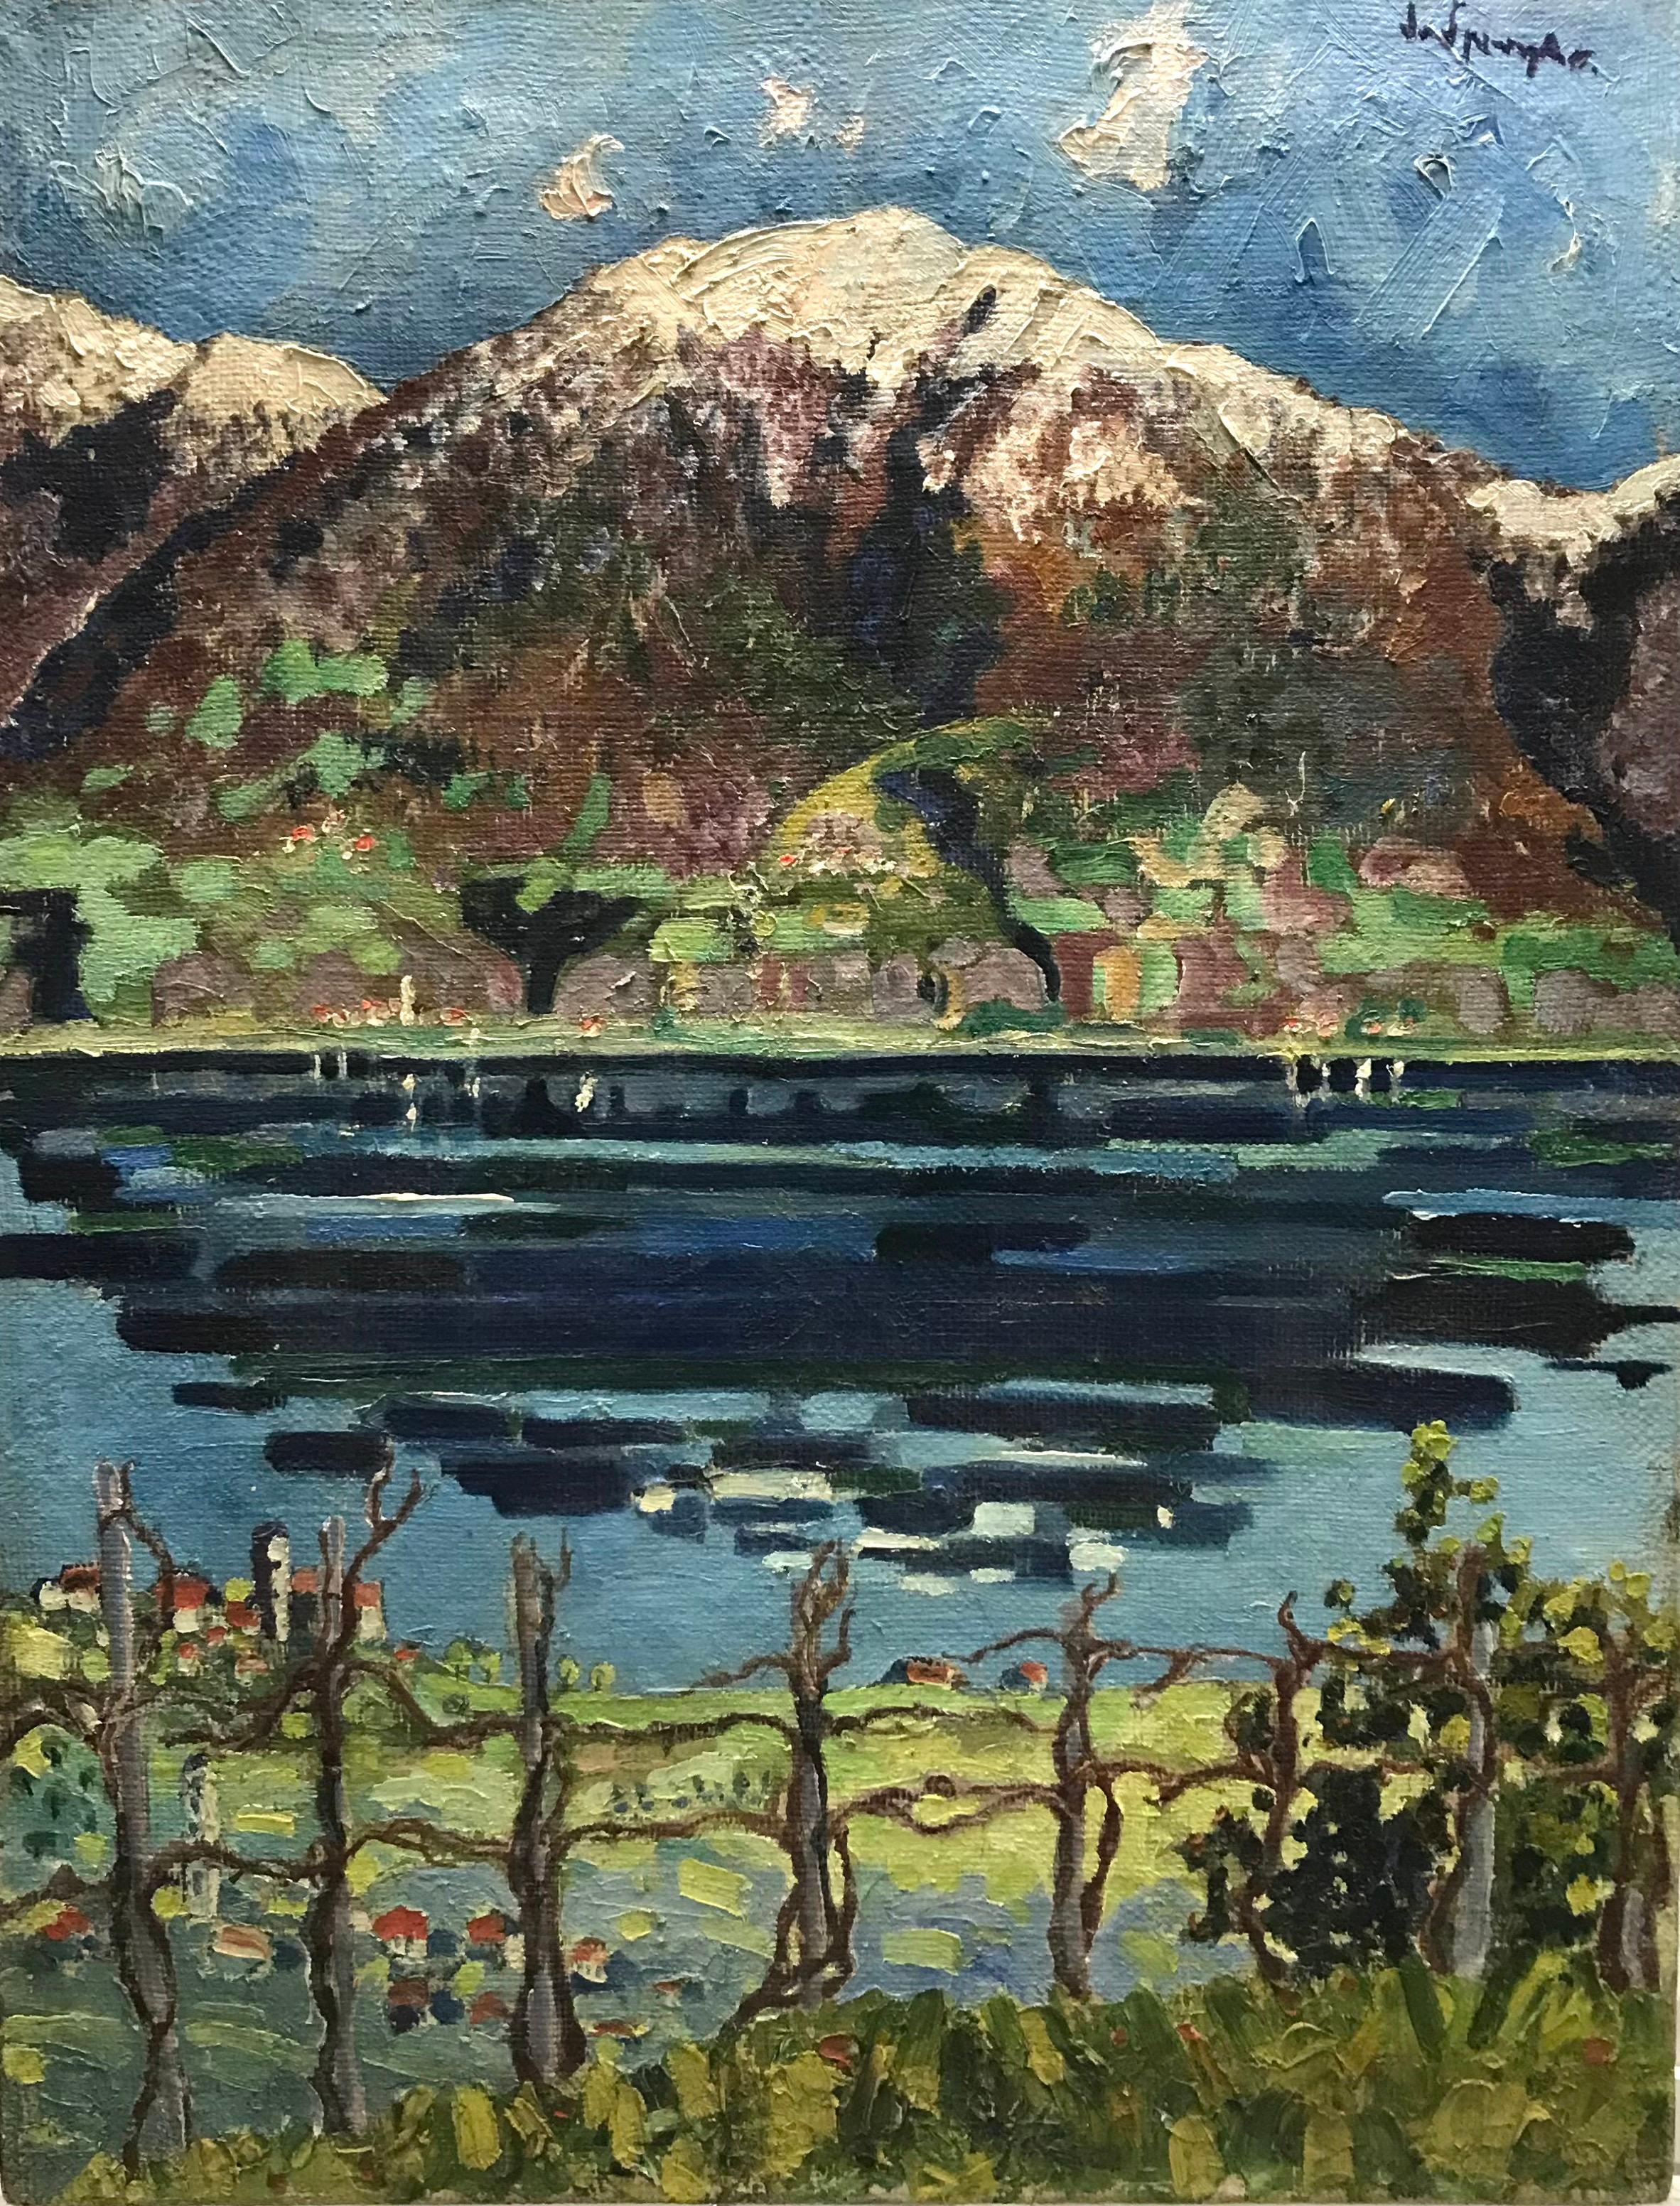 Alexandre De Spengler Landscape Painting - Edge of the lake by Alexandre de Spengler - Oil on canvas 50x65 cm